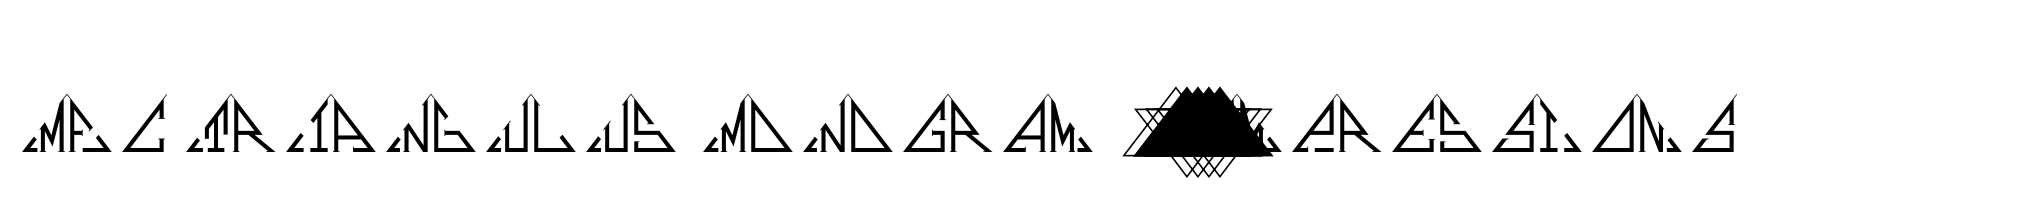 MFC Triangulus Monogram 10000 Impressions image